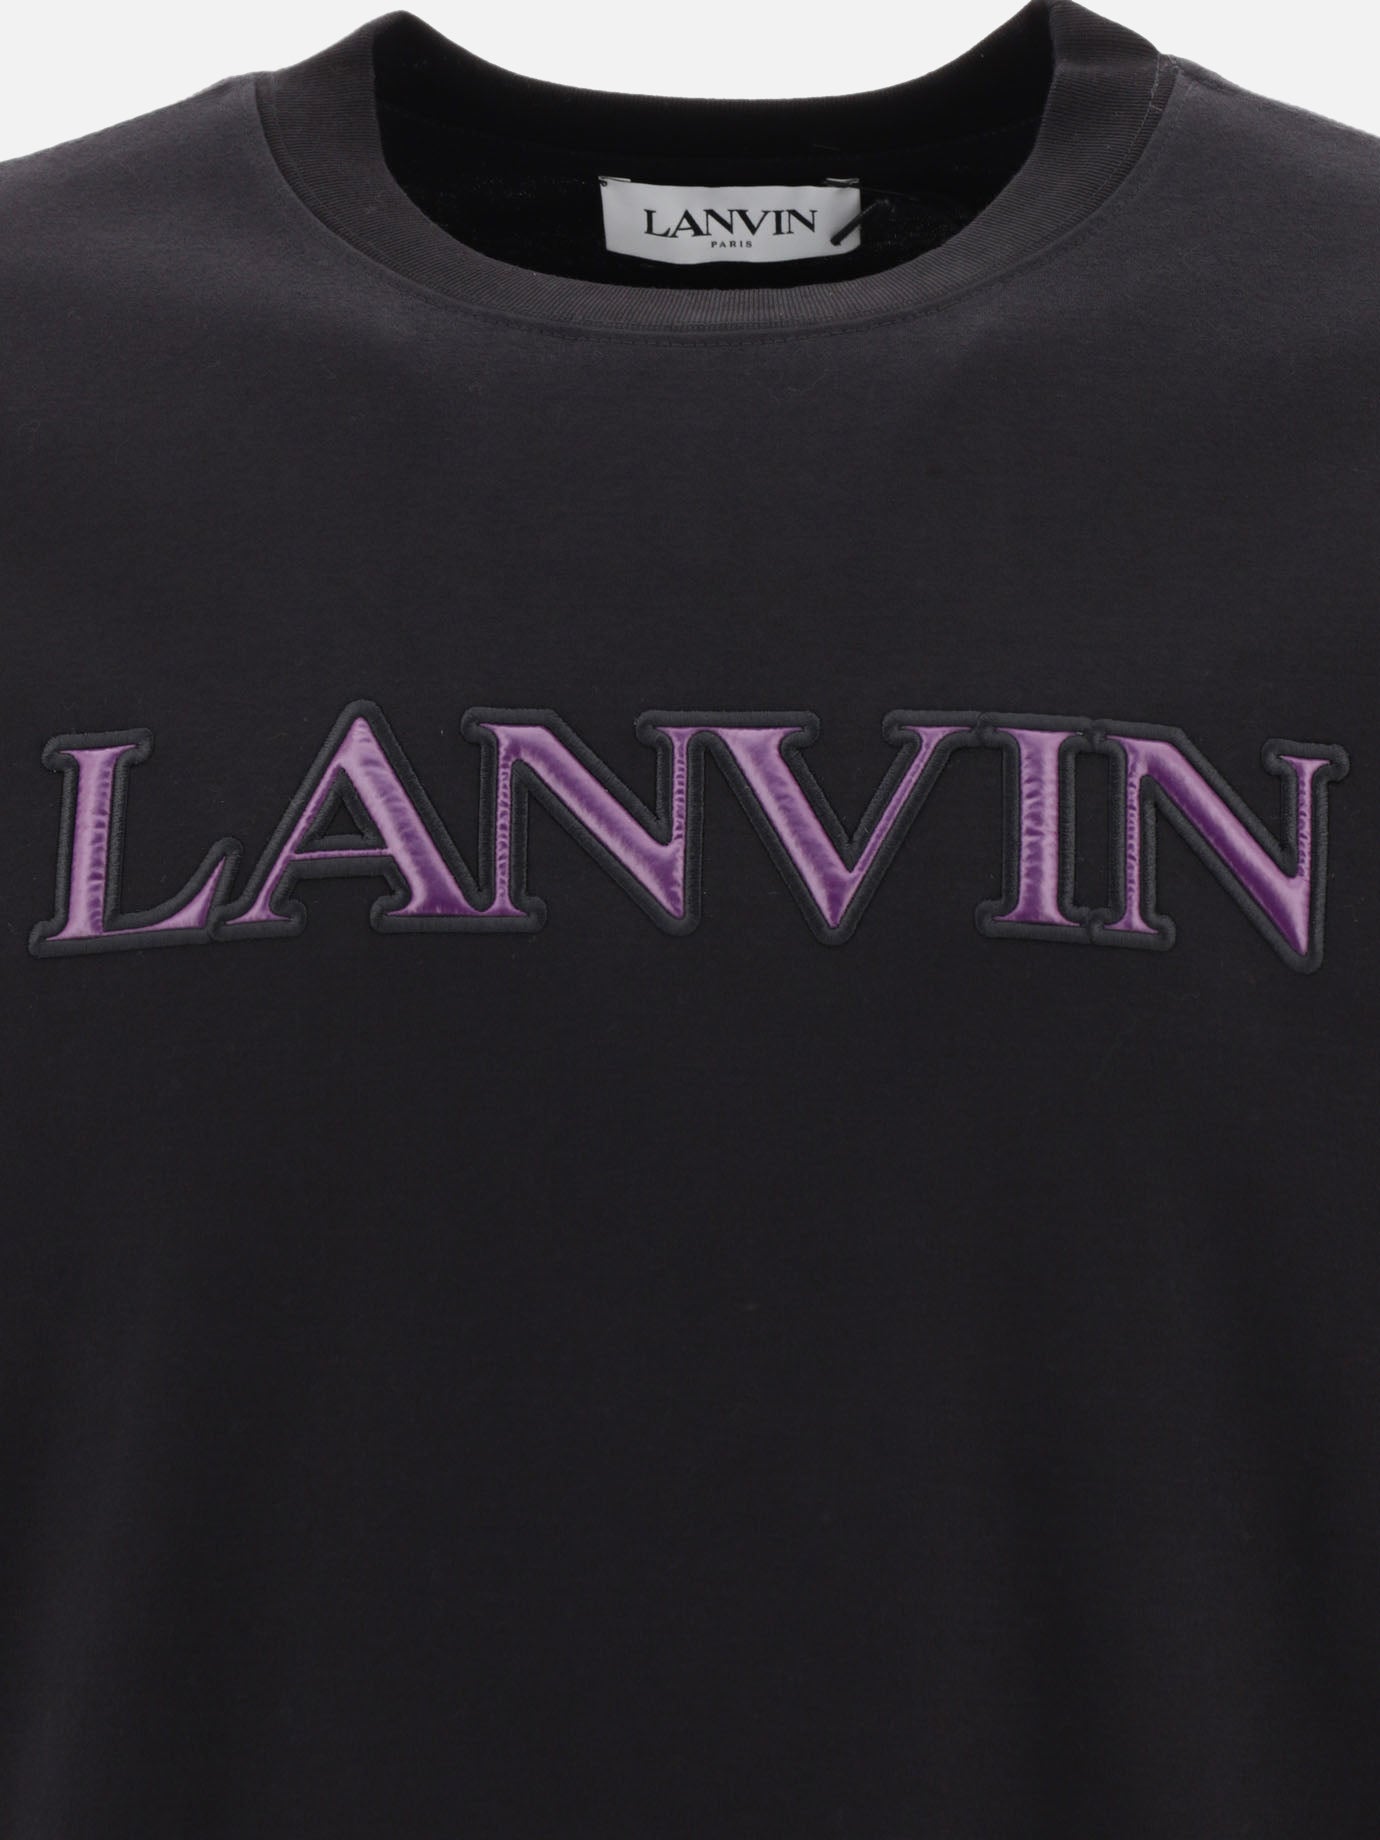 "Puffer Lanvin" t-shirt